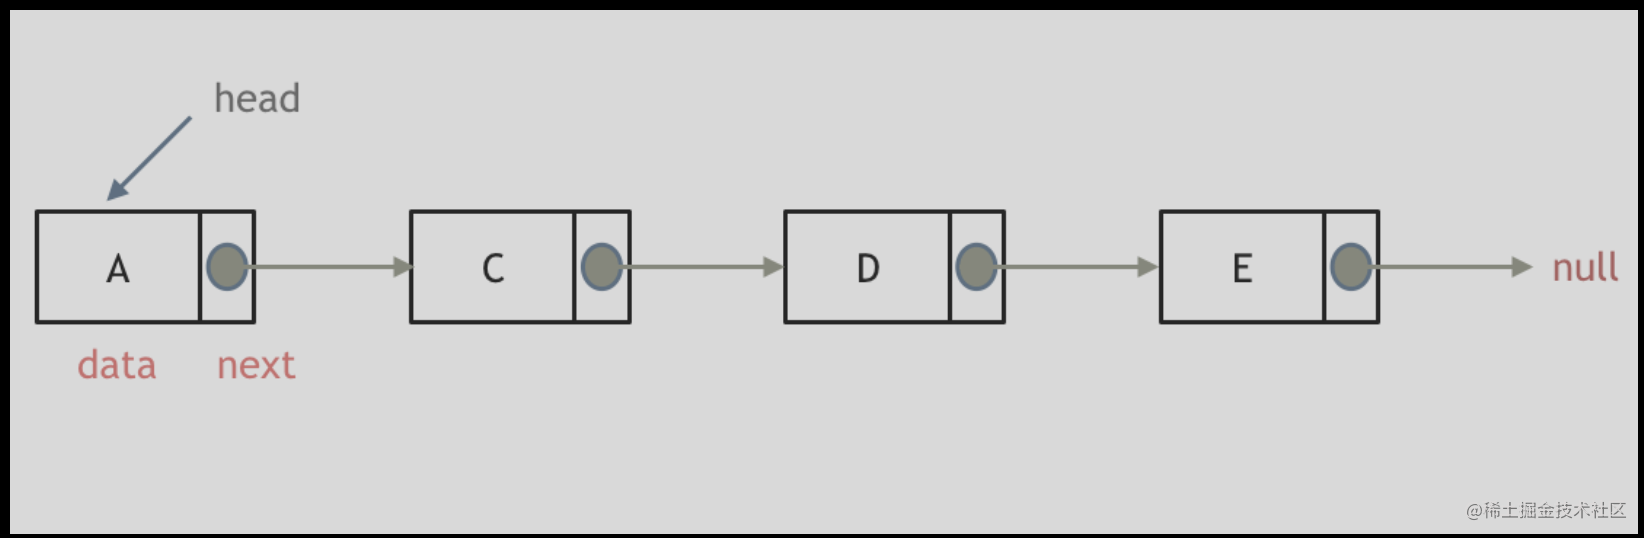 連結串列定義圖